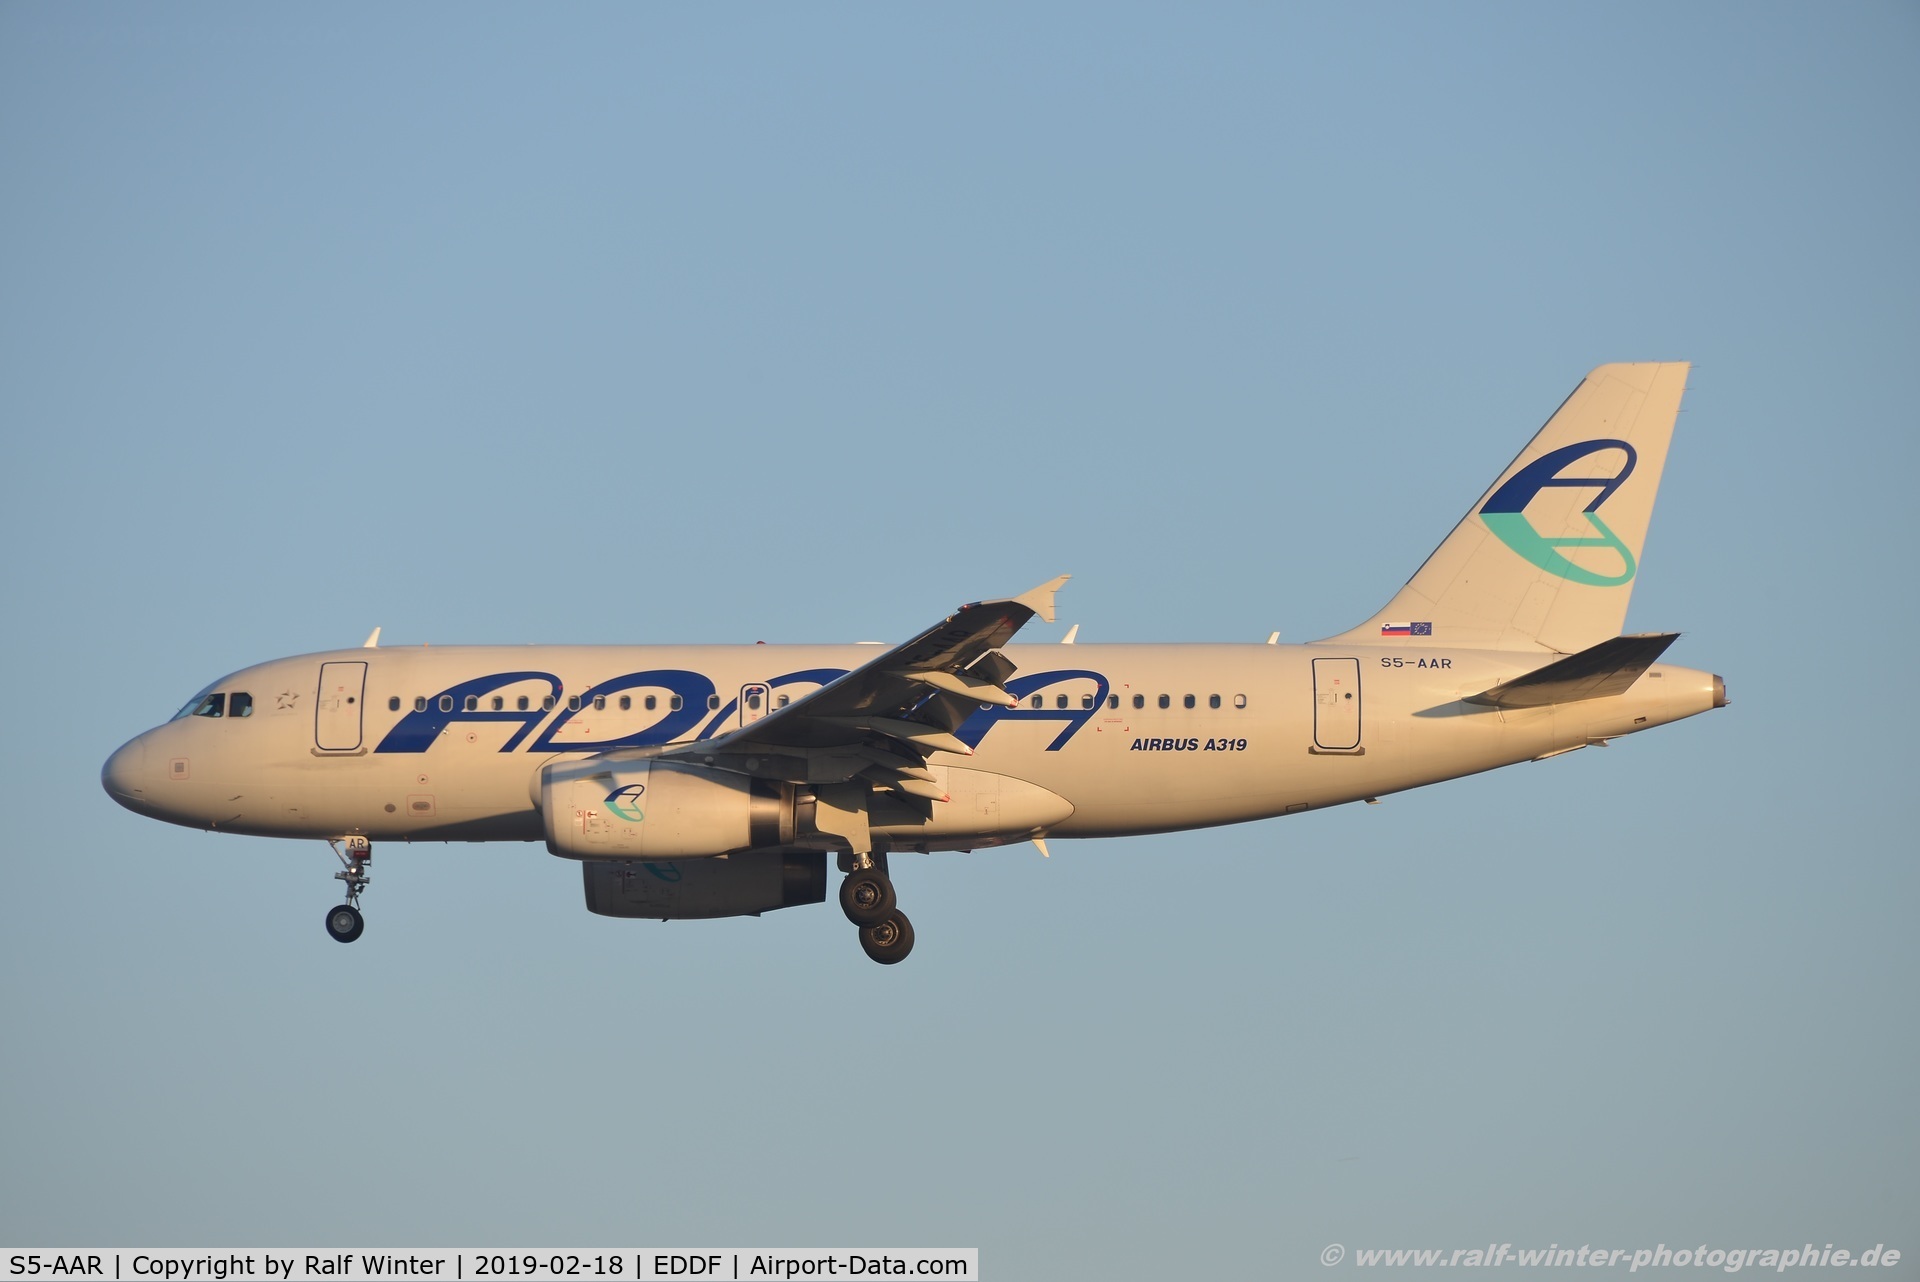 S5-AAR, 2010 Airbus A319-132 C/N 4301, Airbus A319-132 - JP ADR Adria Airways - 4301 - S5-AAR - 18.02.2019 - FRA